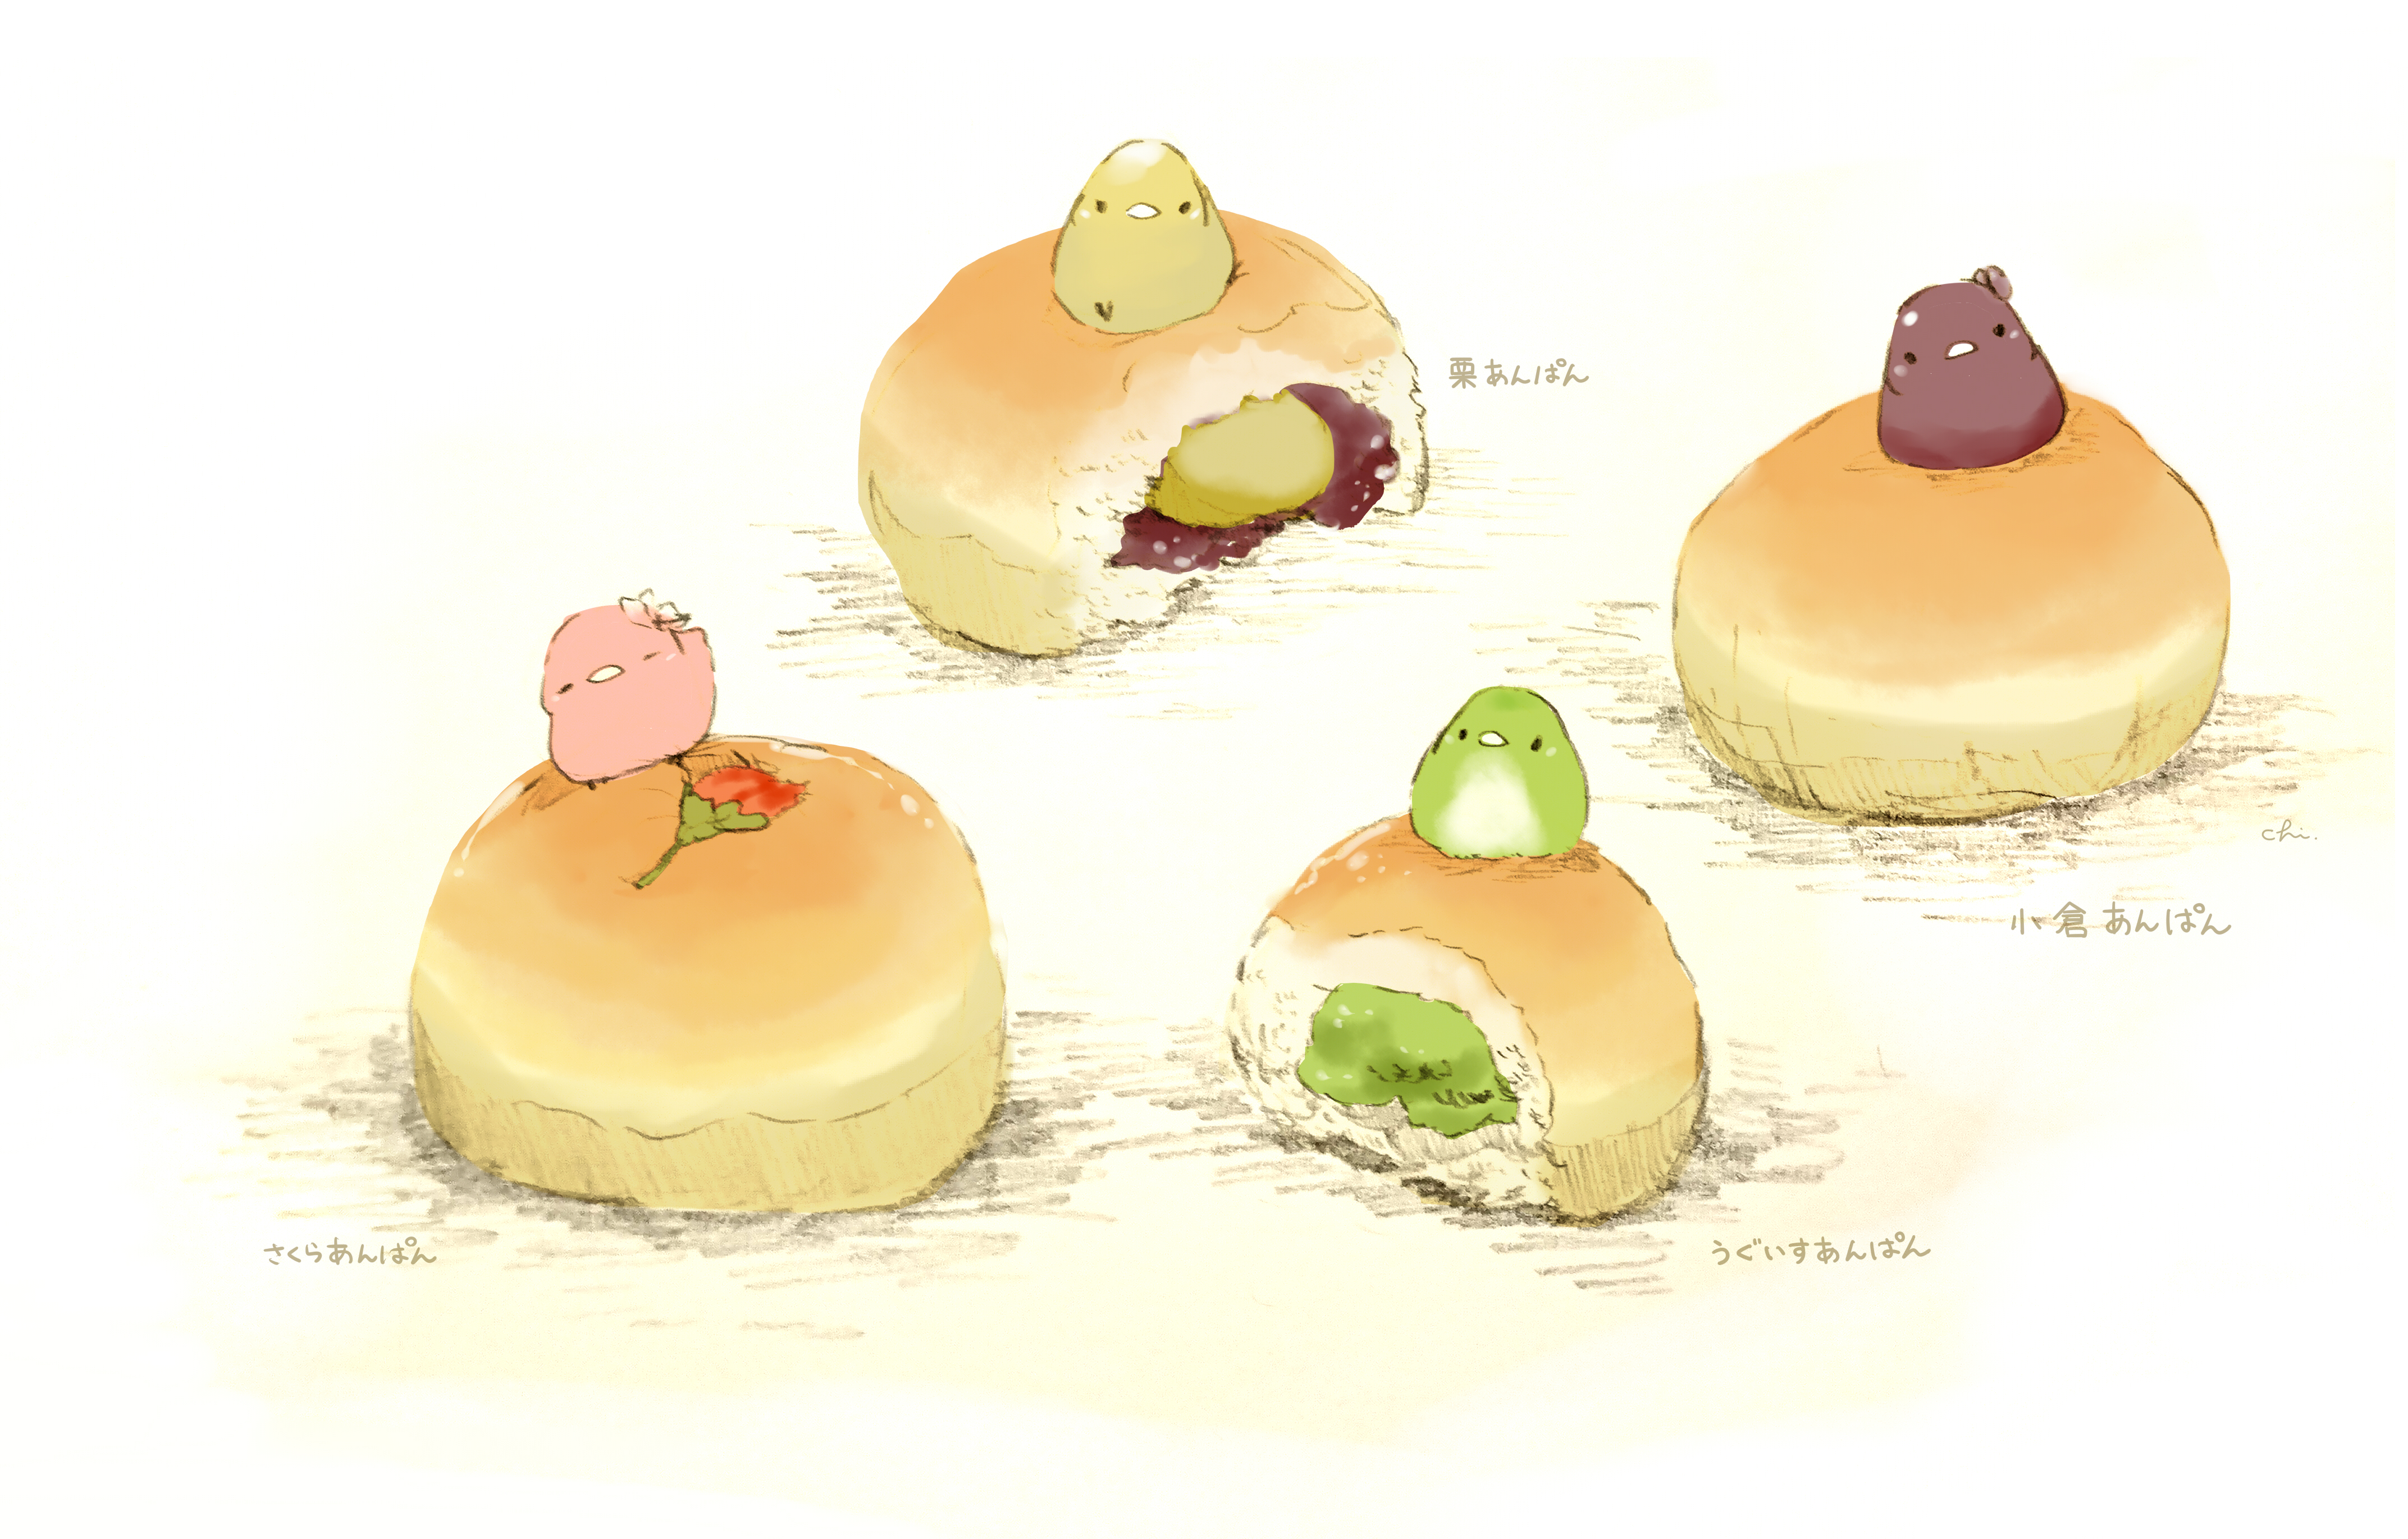 Мочи японский десерт арт